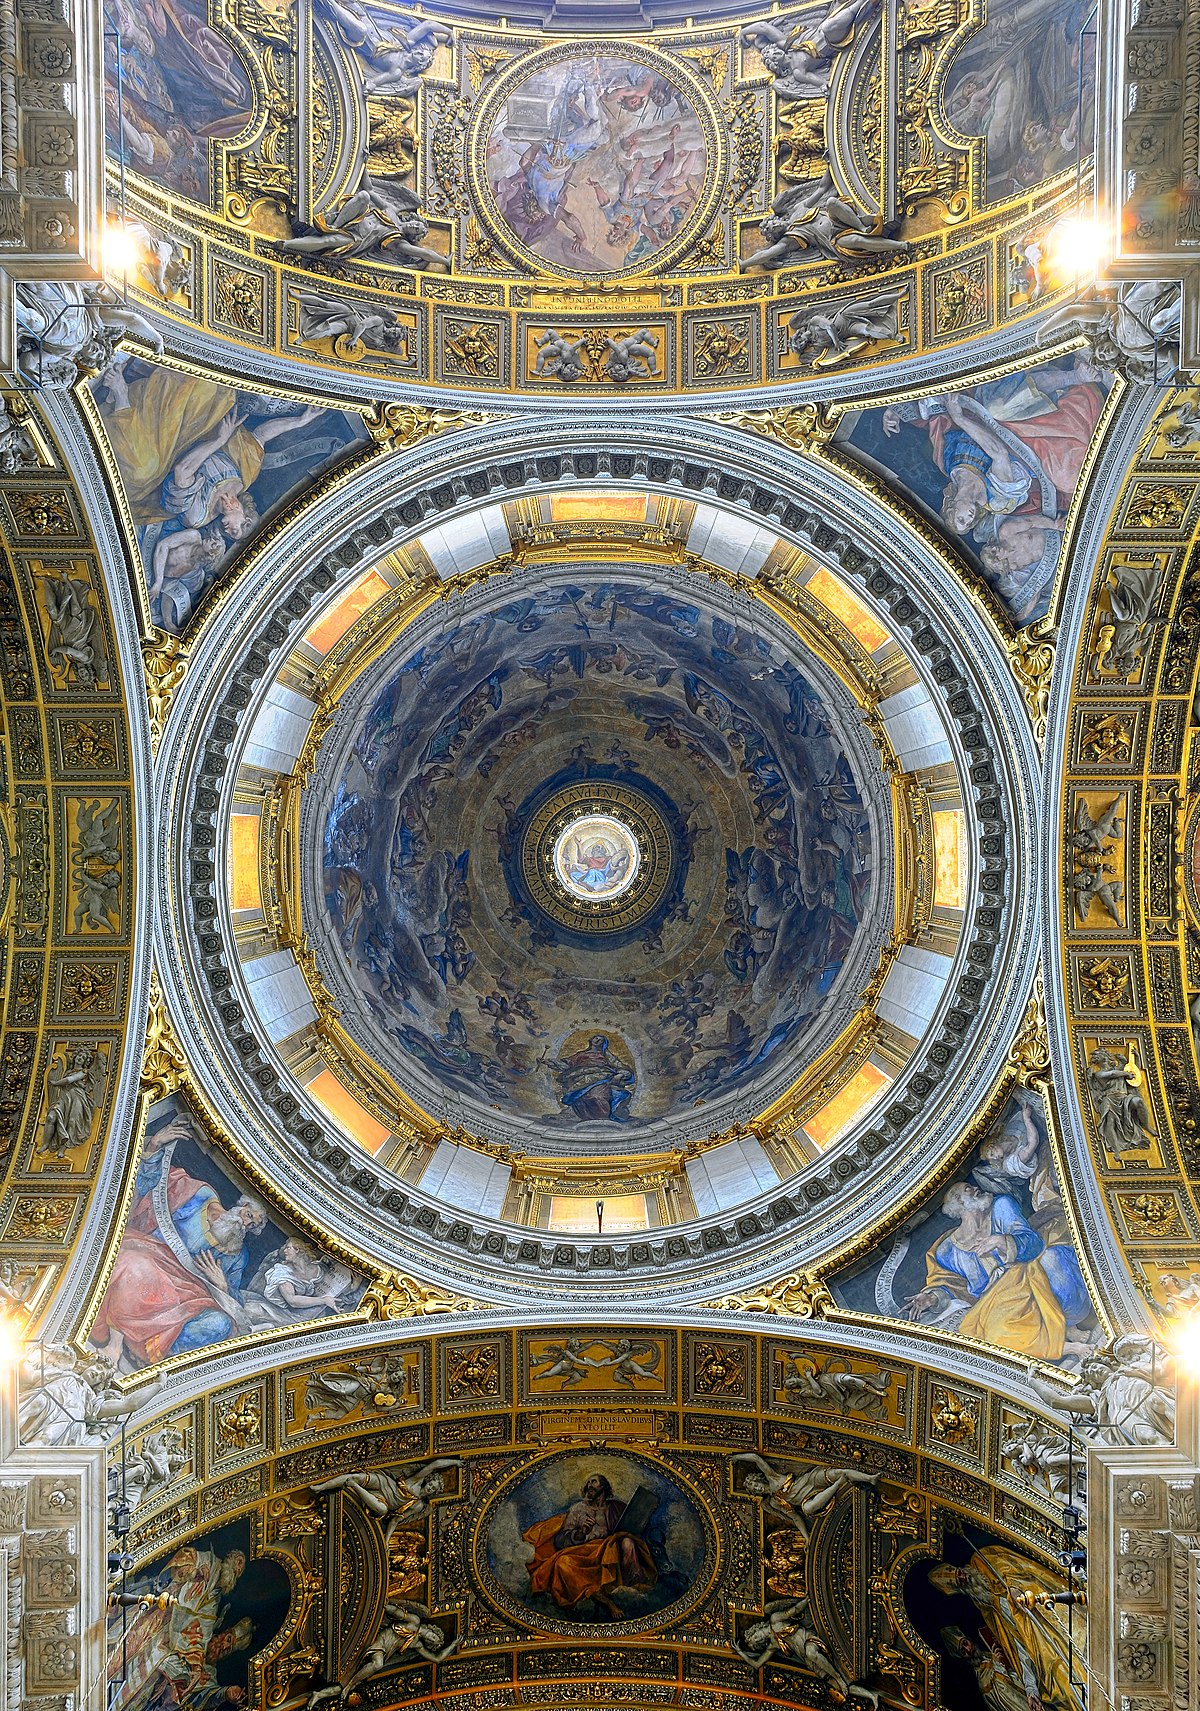 File:Dome of Cappella Paolina in Santa Maria Maggiore (Rome).jpg - Wikipedia